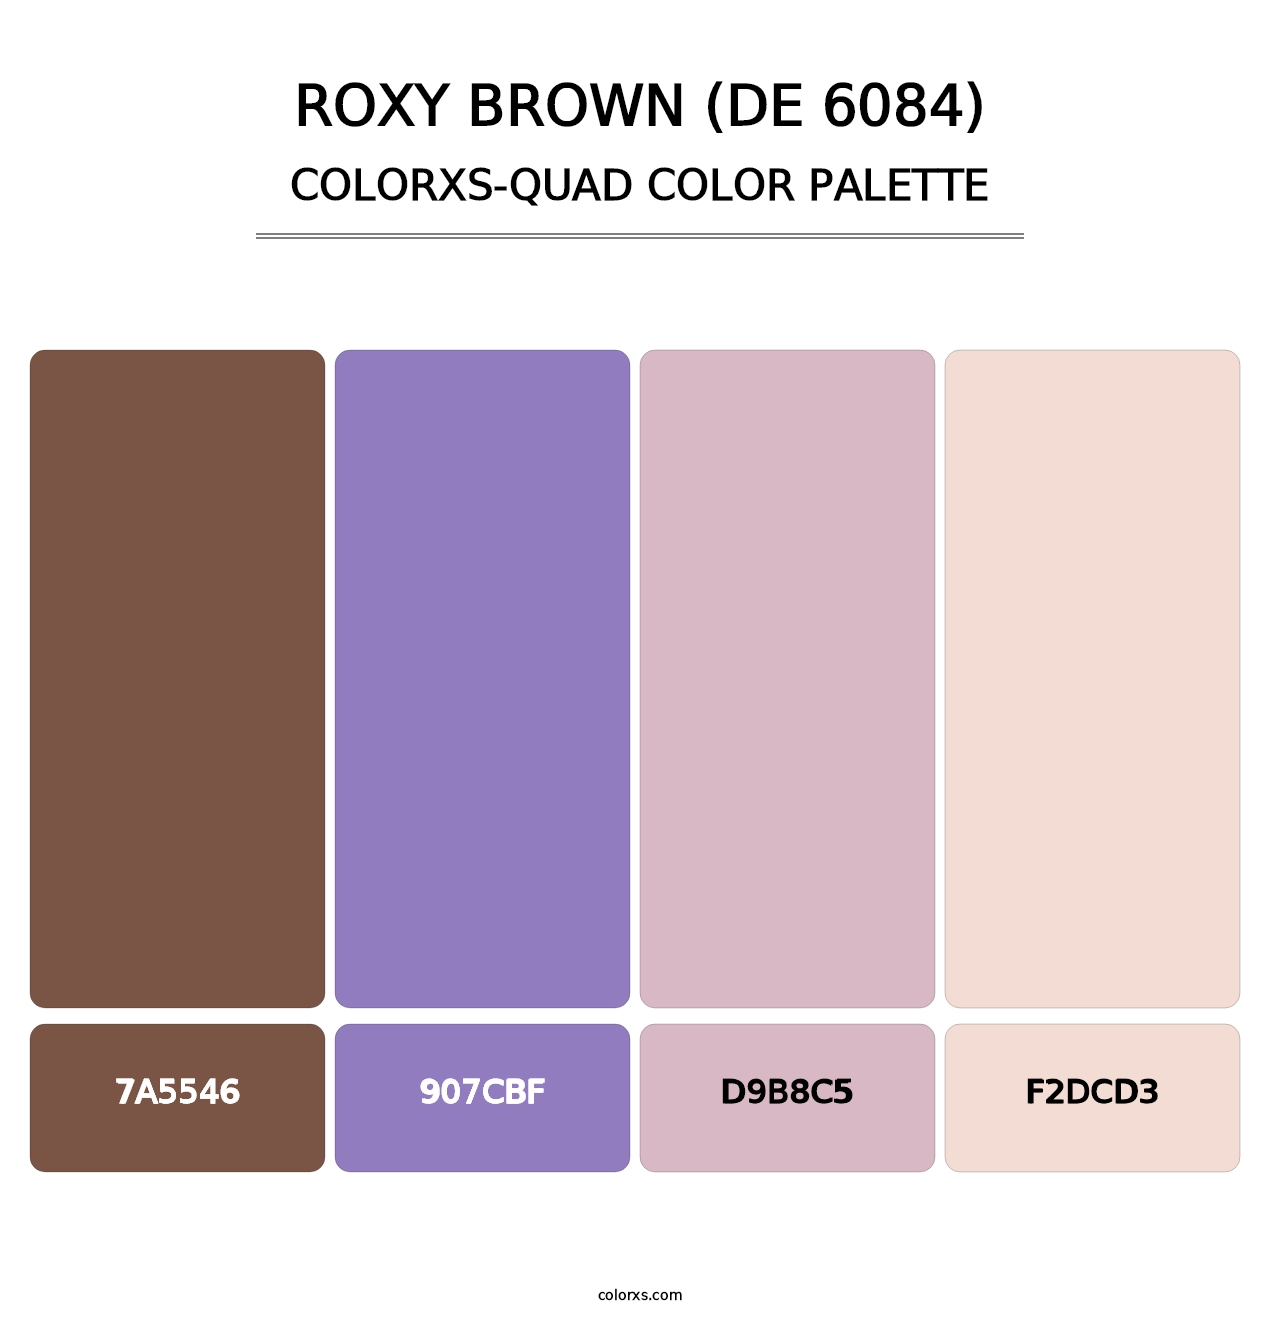 Roxy Brown (DE 6084) - Colorxs Quad Palette